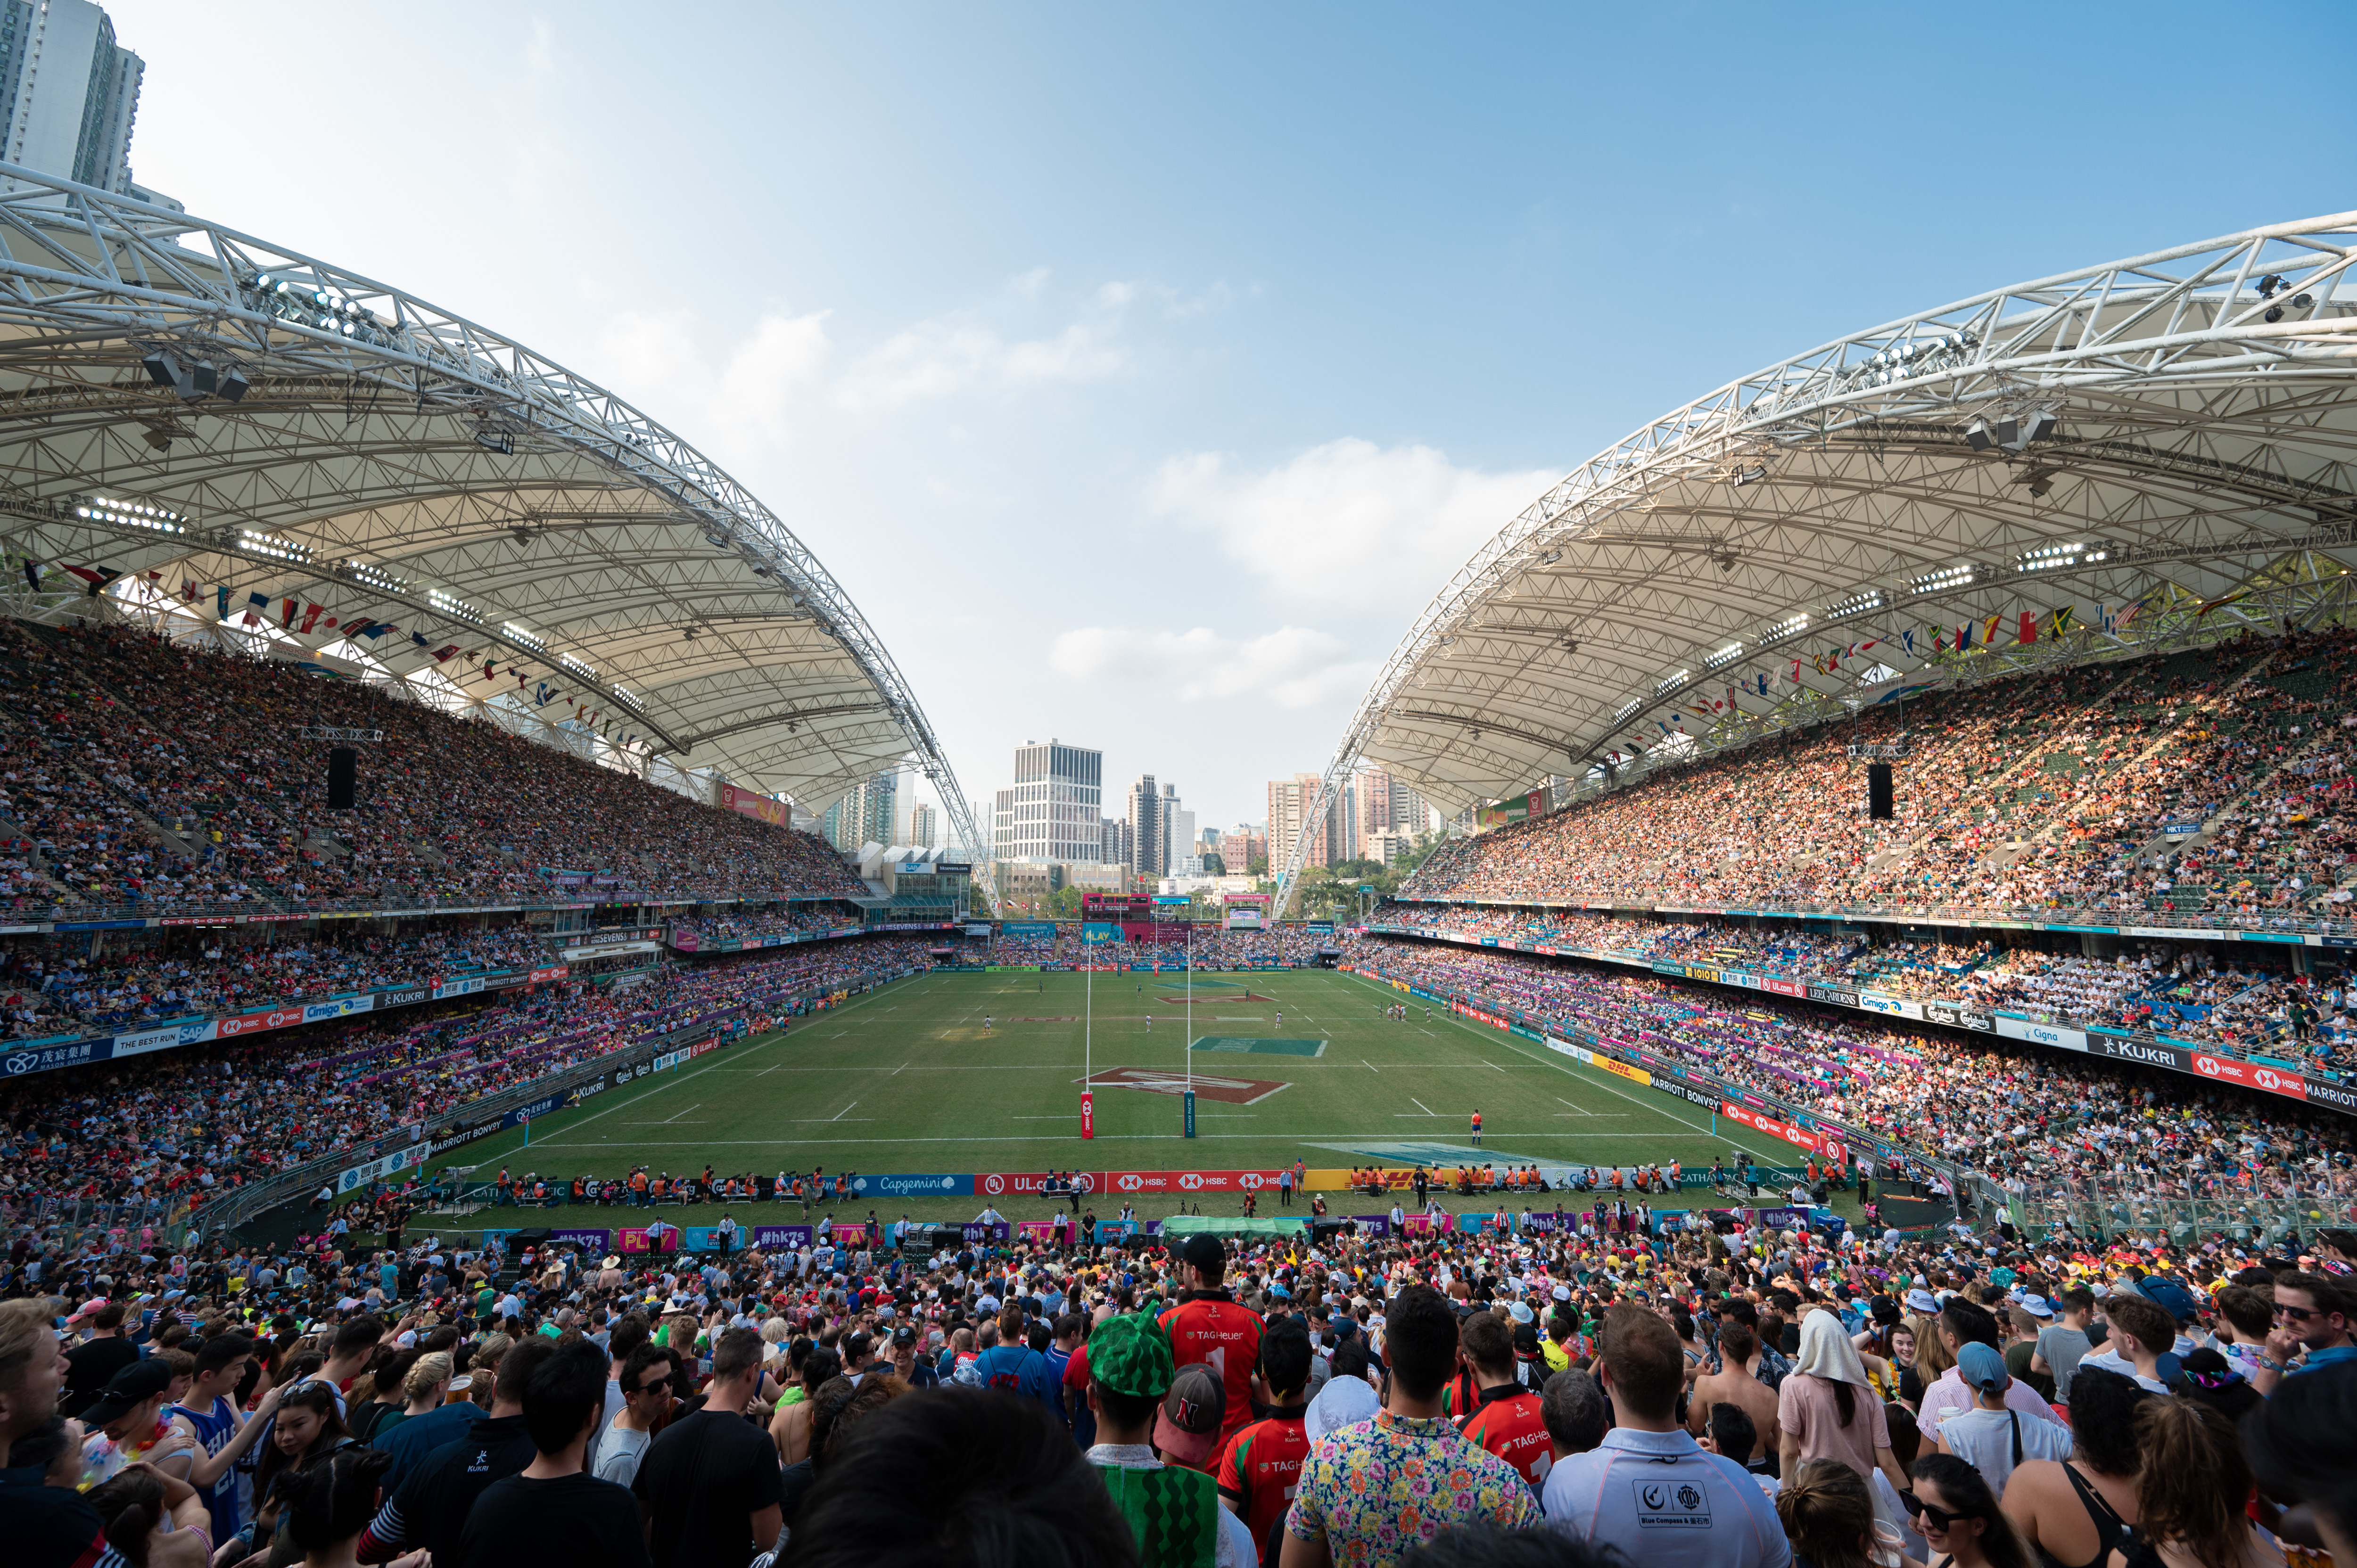  取消舉辦「國泰航空/滙豐香港國際七人欖球賽2021」聲明